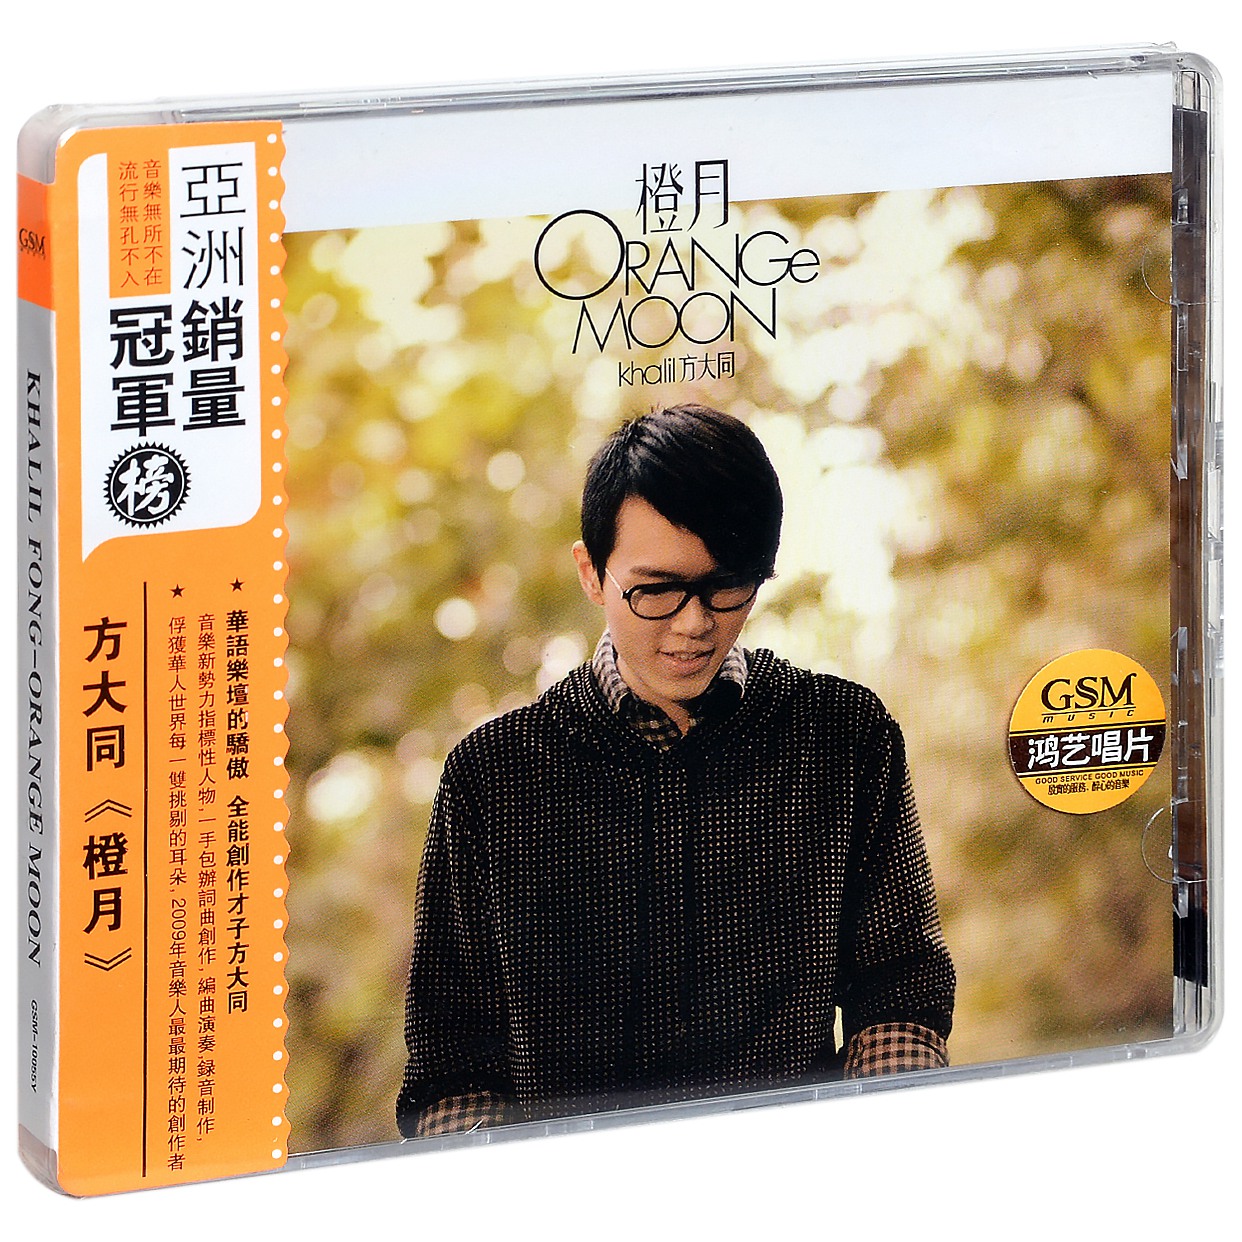 正版唱片 方大同国语专辑《橙月》CD+歌词本 2008年发行